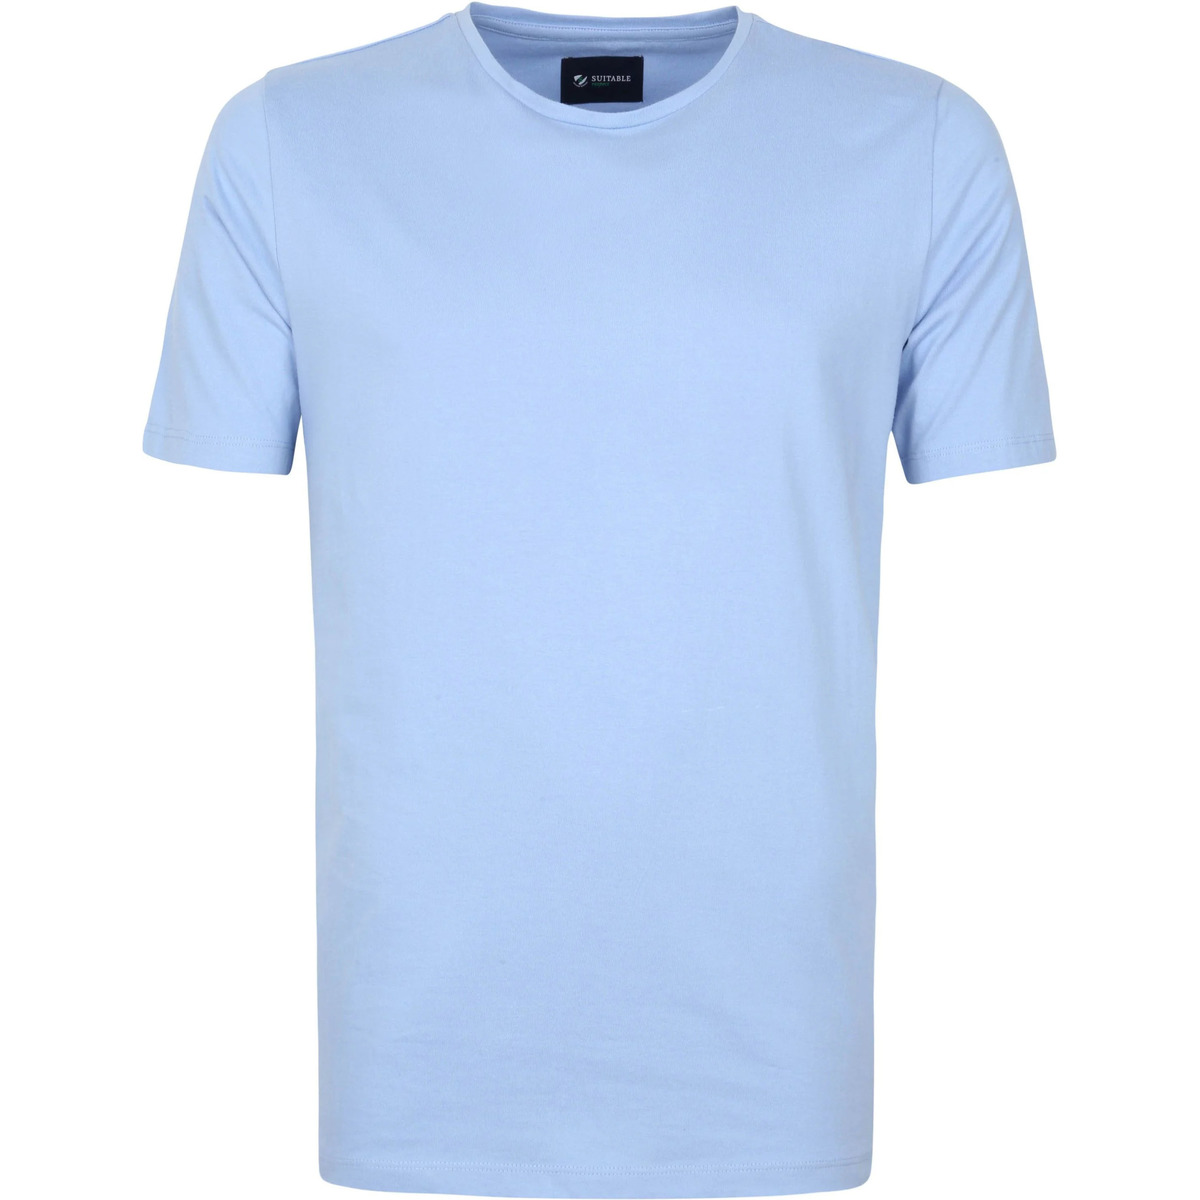 Vêtements Homme T-Shirt Commemorative in cotone bianco Suitable Respect T-shirt Jim Bleu Clair Bleu